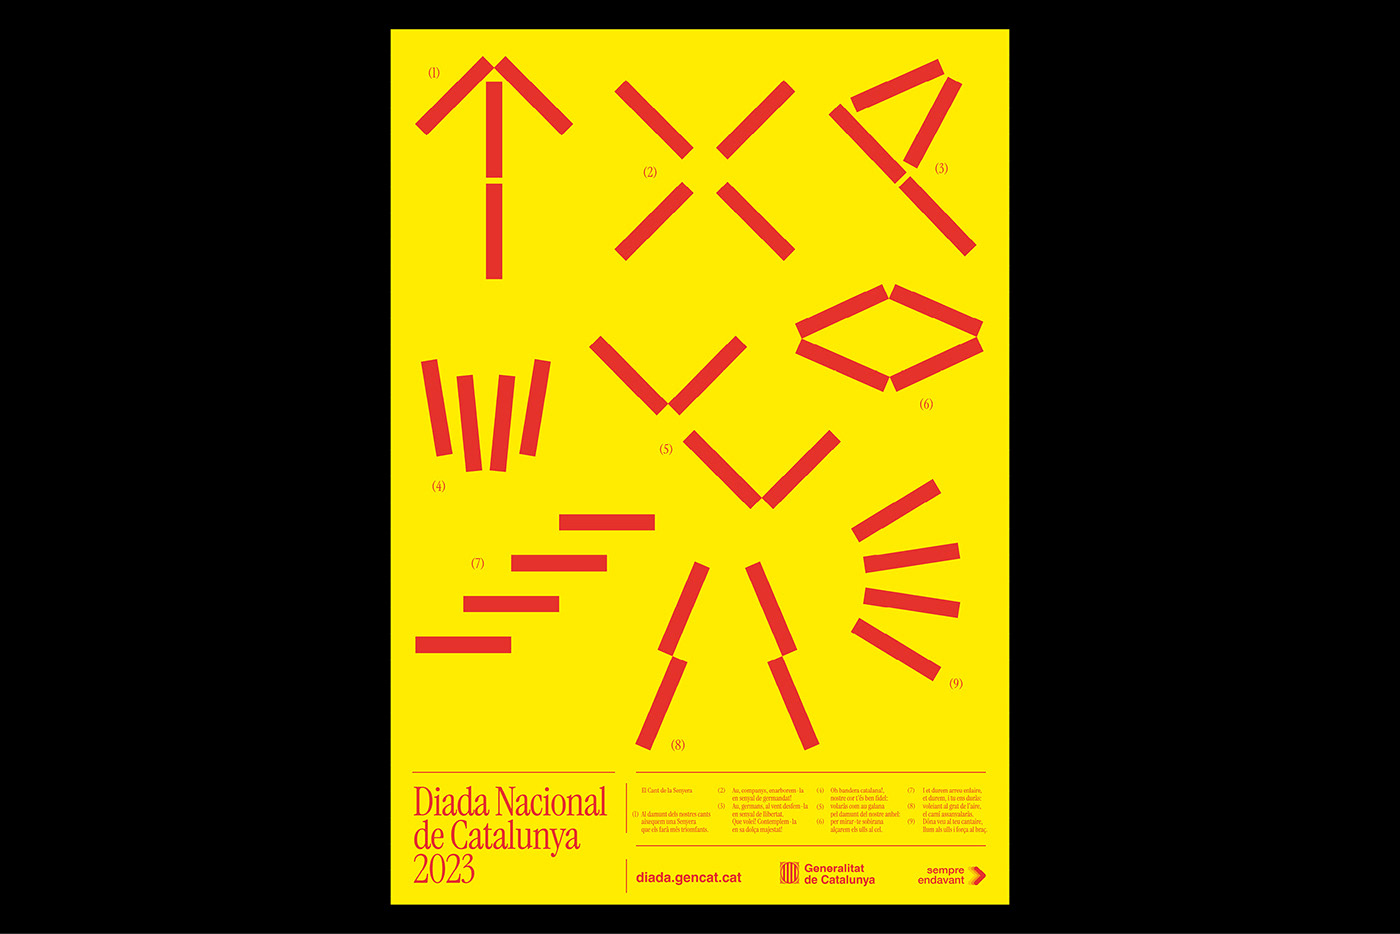 barcelona Cataluña catalunya catalonia festive campaing identity poster visual identity diada